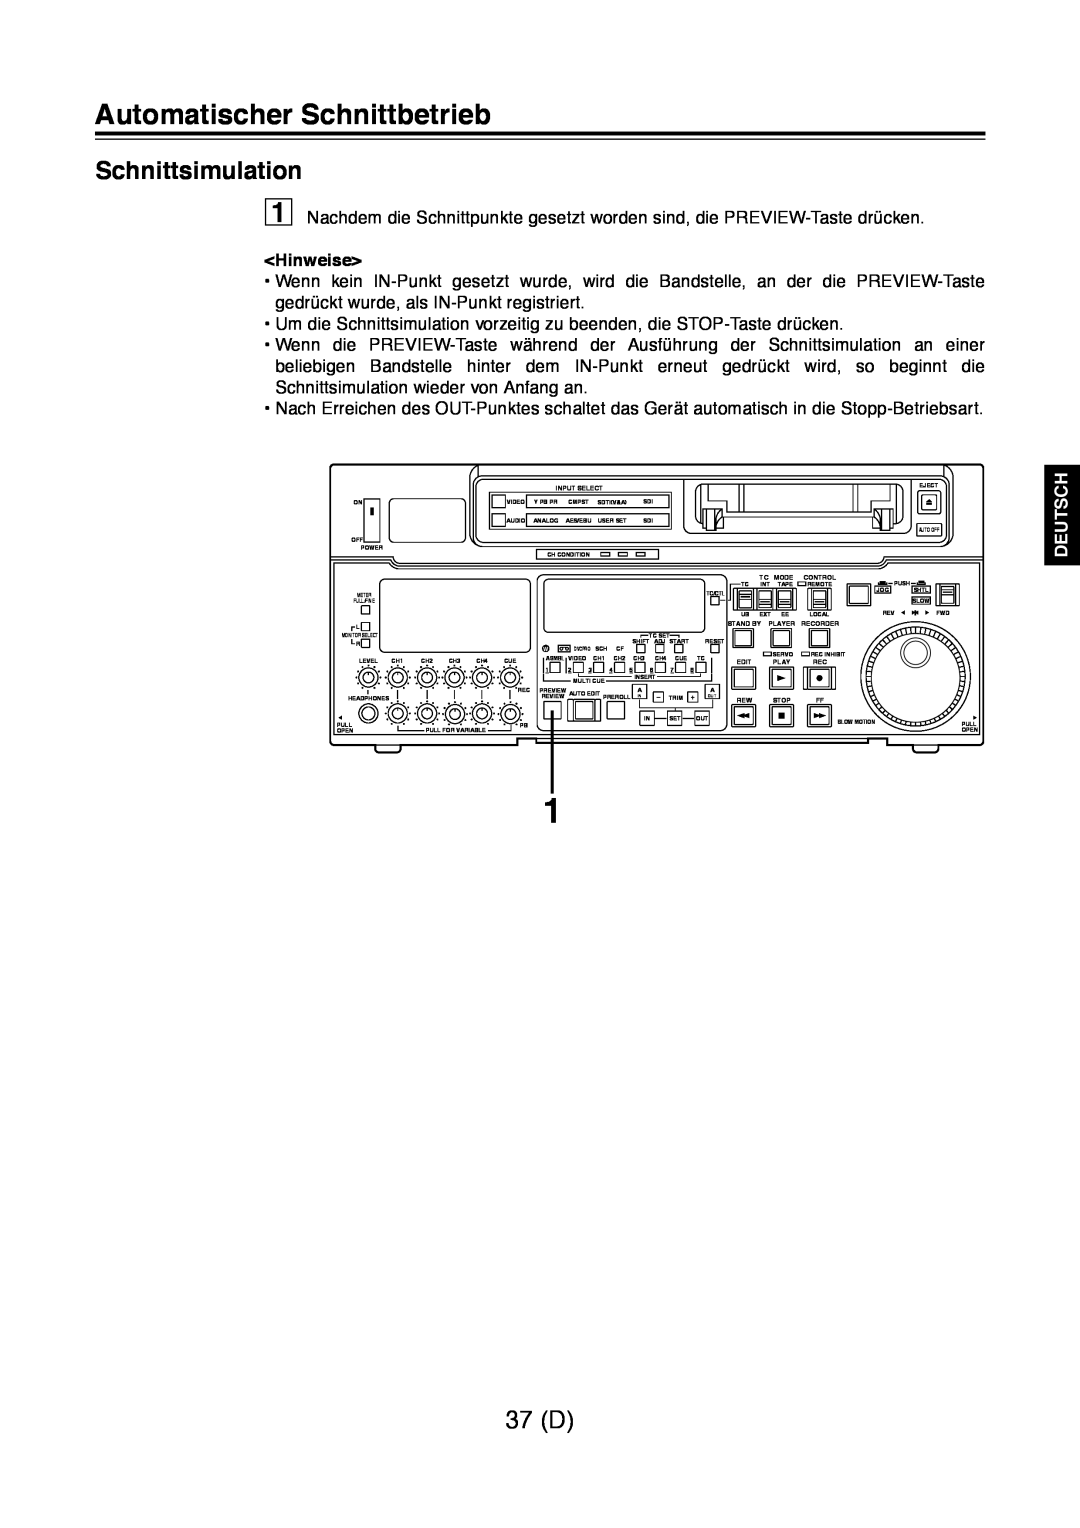 Panasonic AJ-D960 operating instructions Schnittsimulation, 37 D, Automatischer Schnittbetrieb, Hinweise, Deutsch 